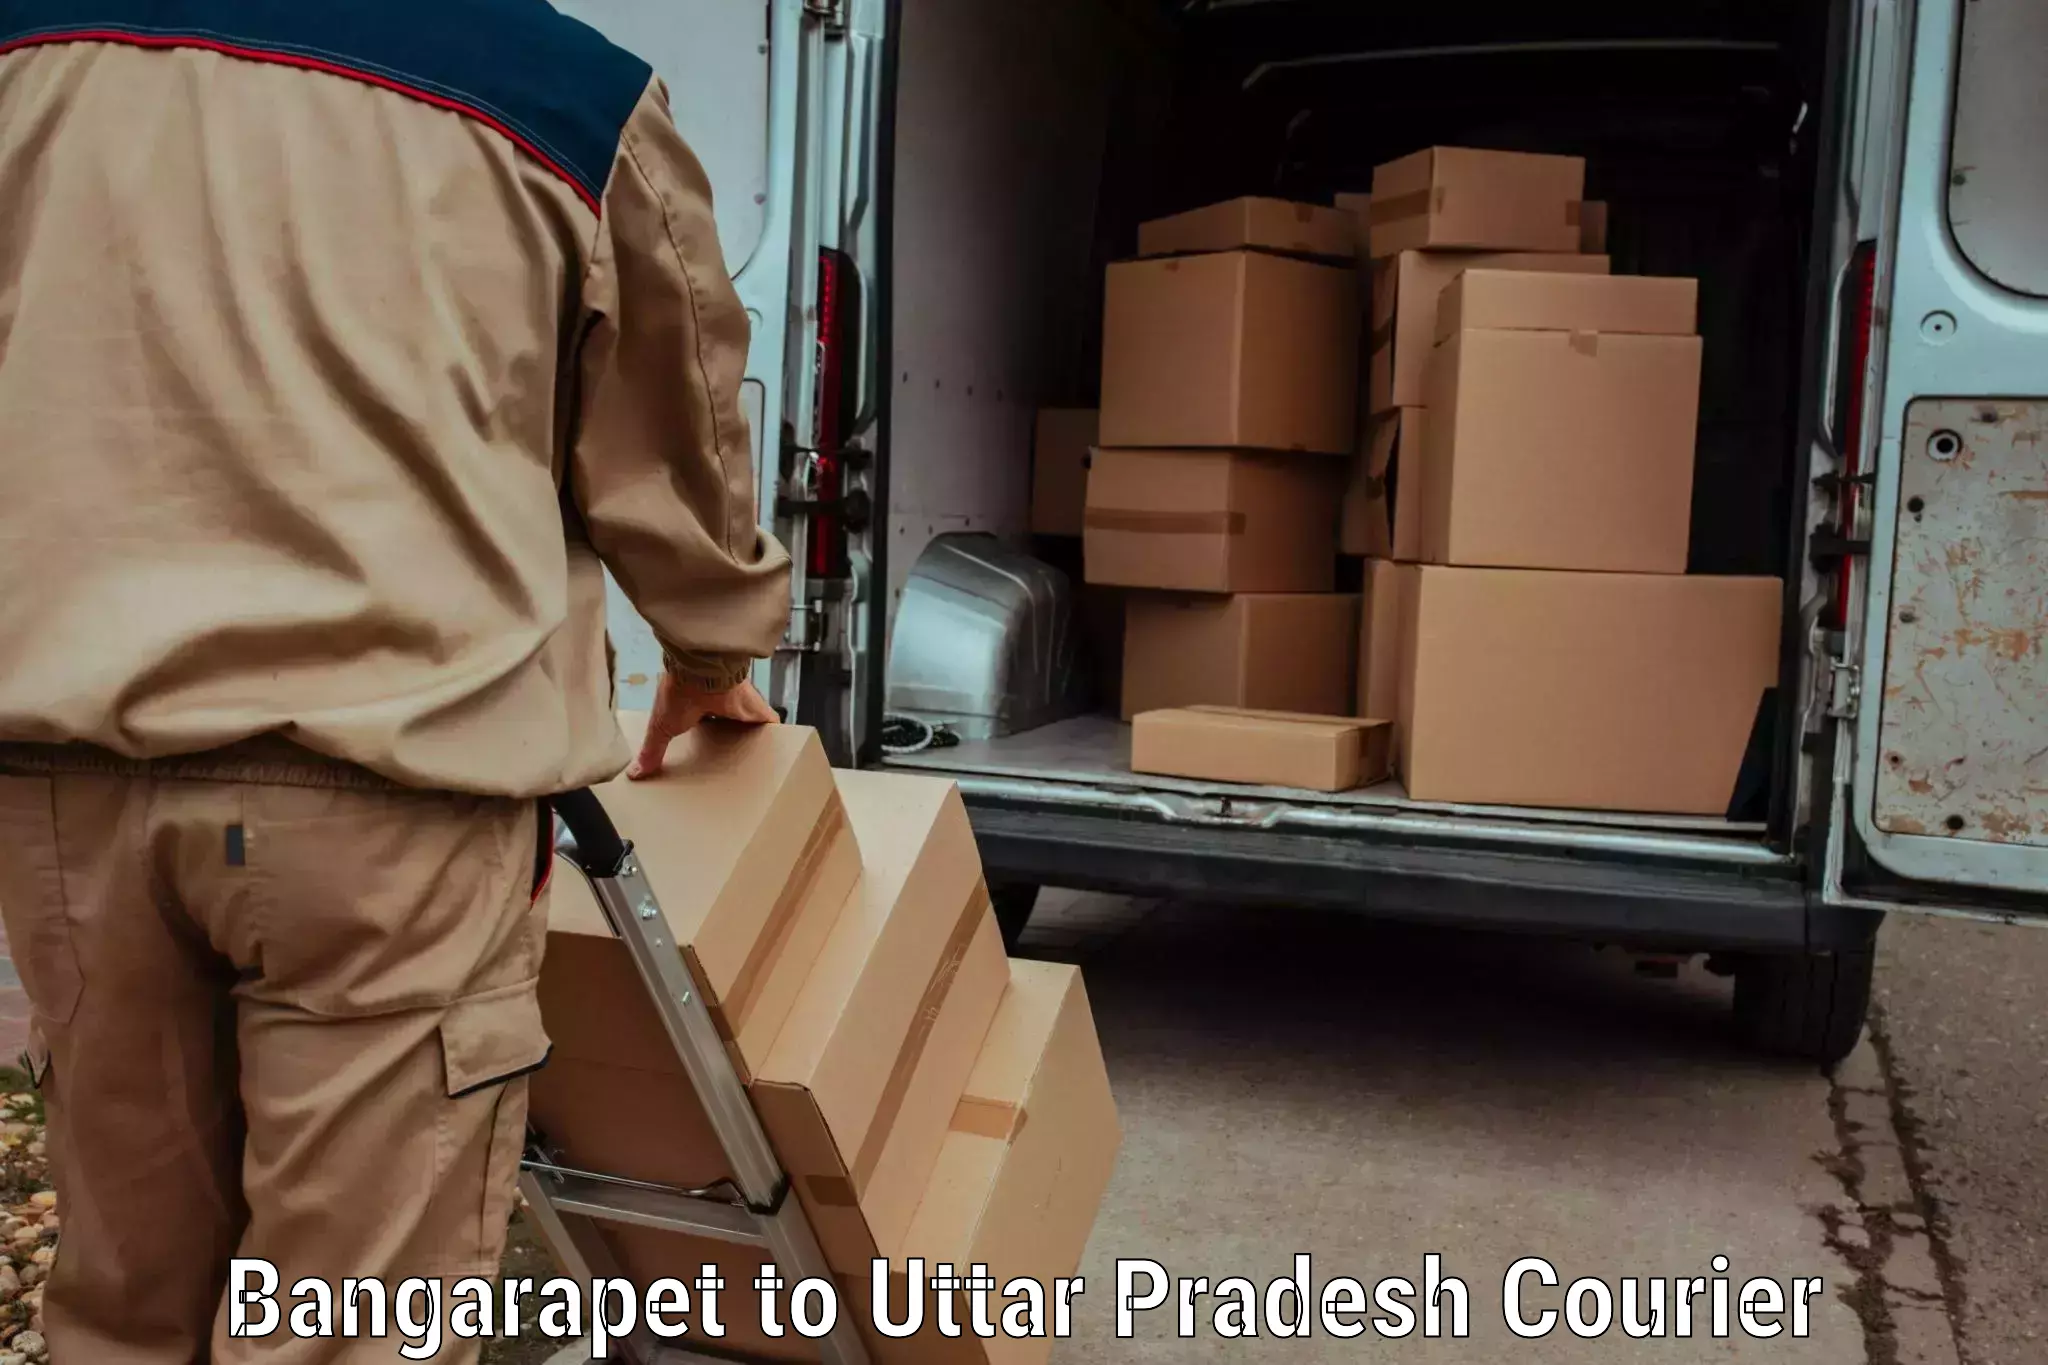 Quality courier partnerships Bangarapet to Kalpi